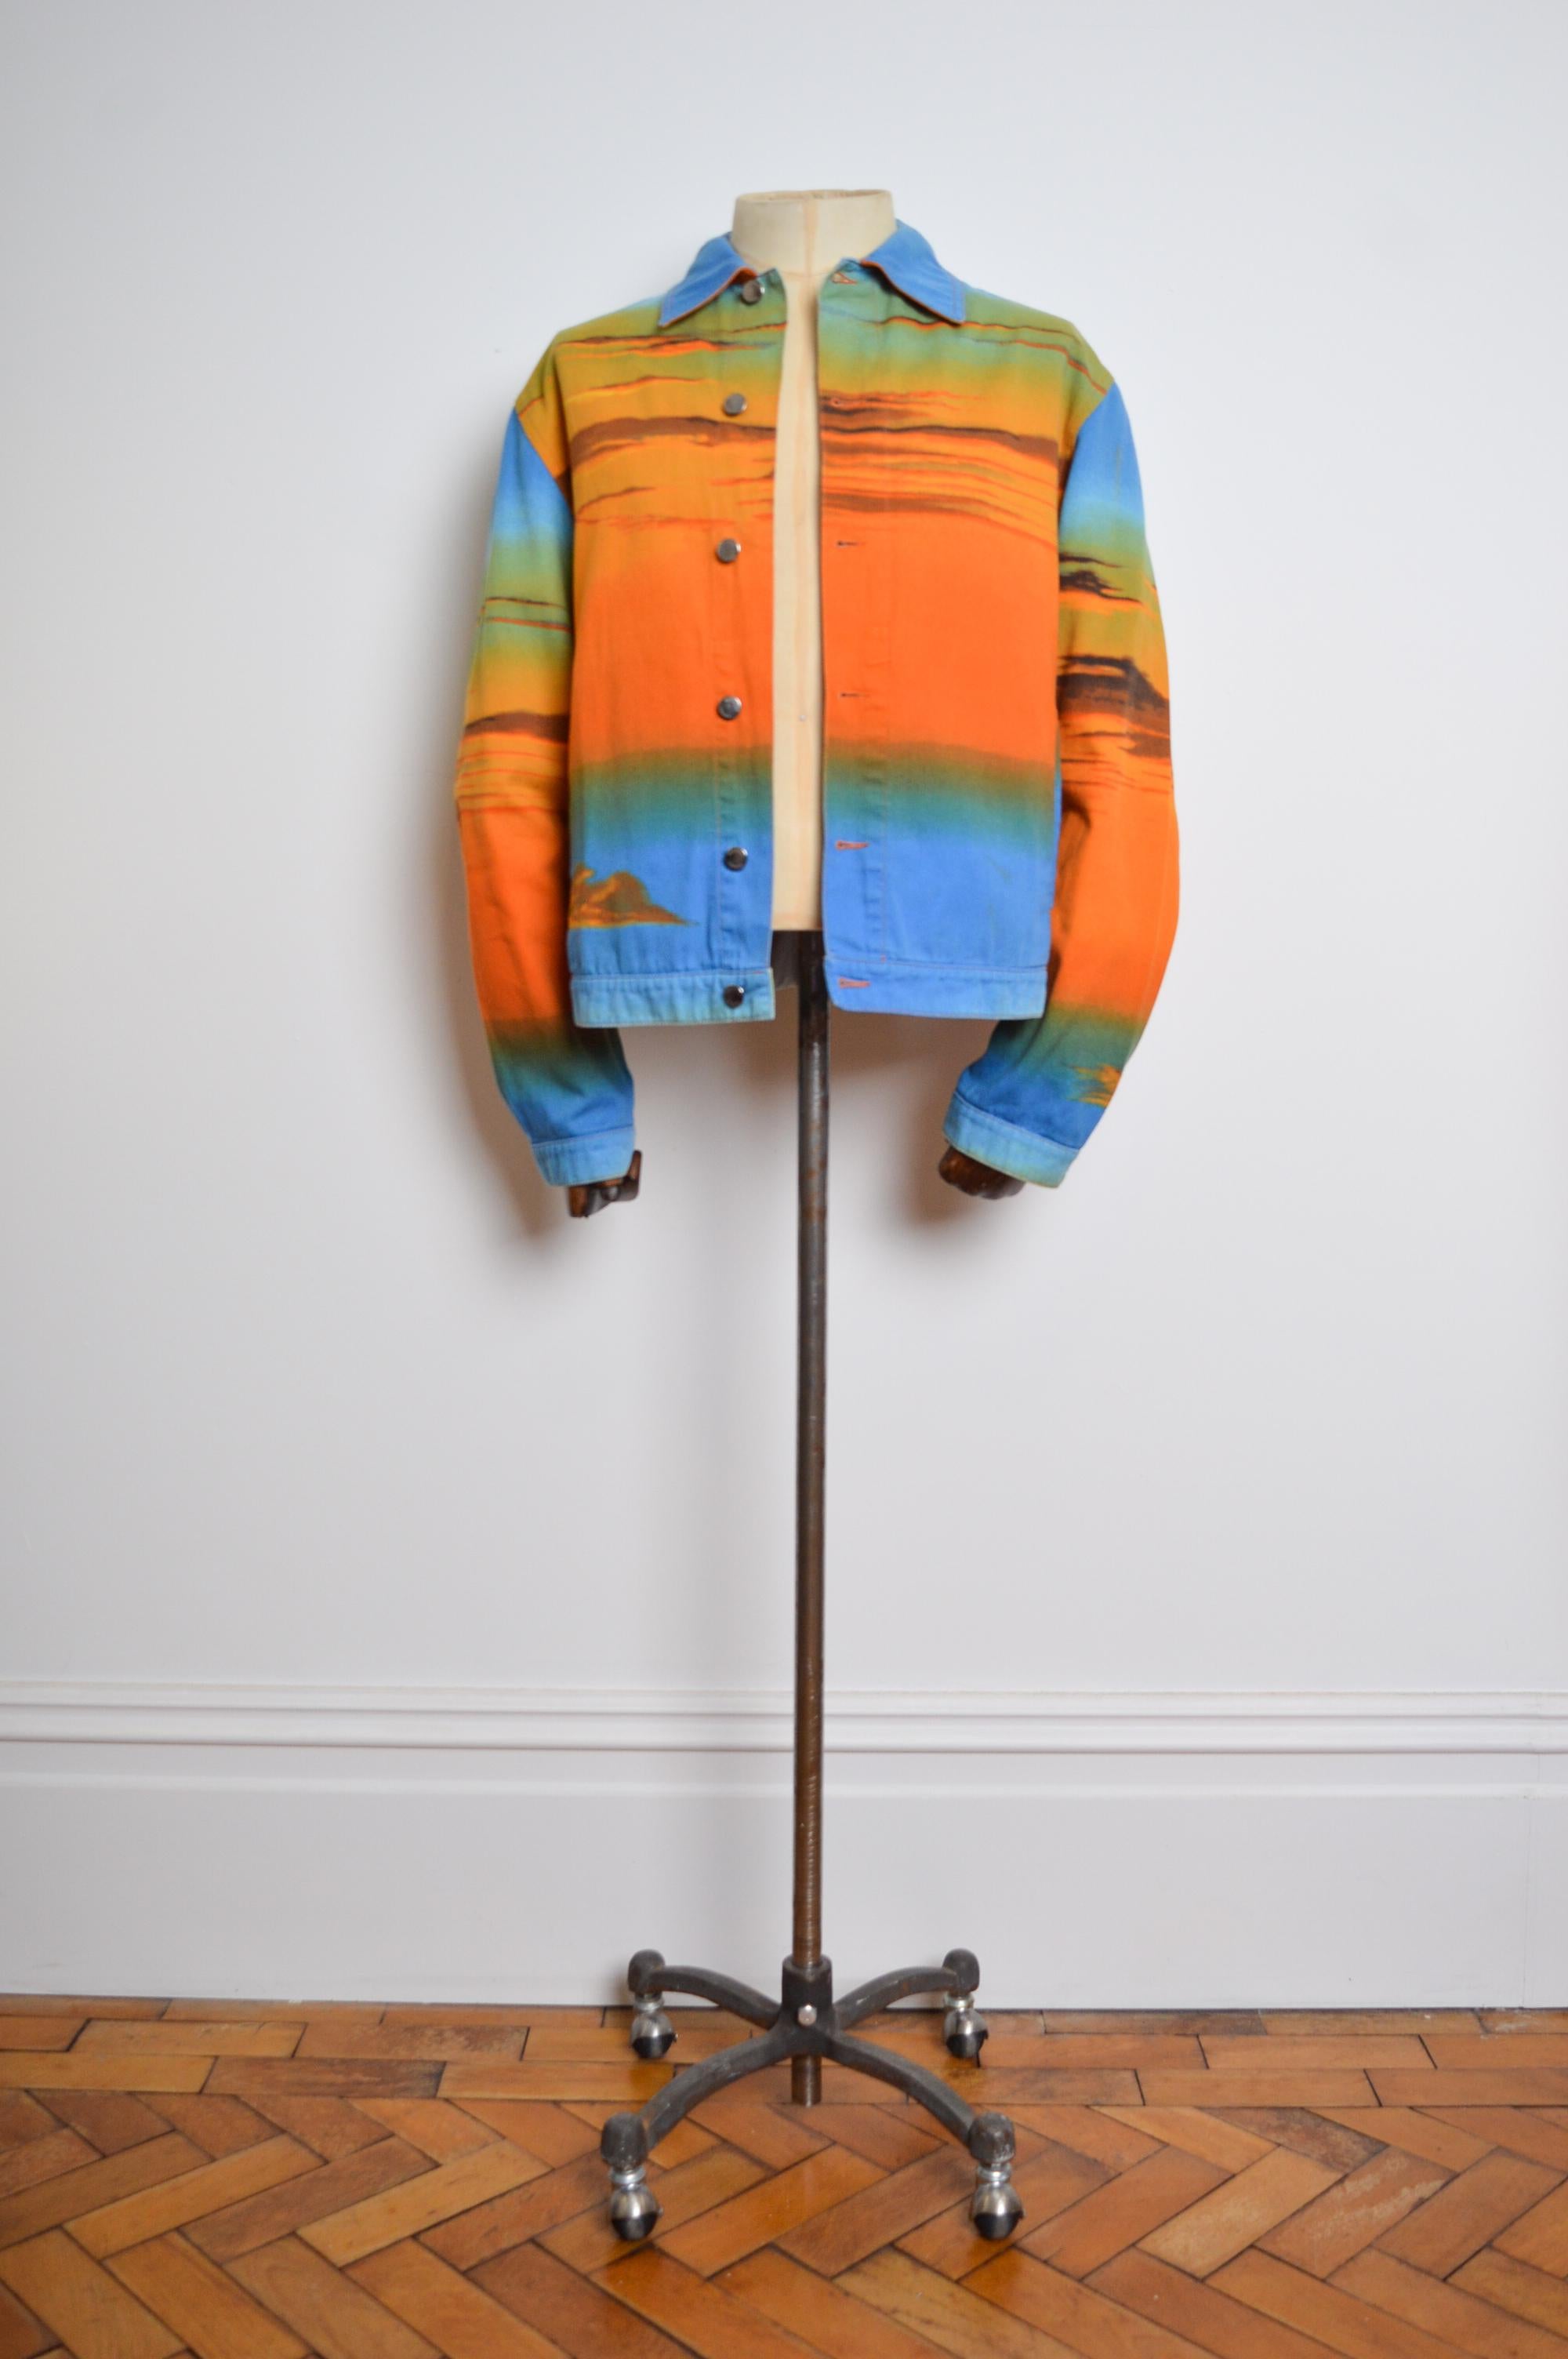 Veste en coton imprimé 'MOSCHINO' du début des années 2000, réalisée en tissu imprimé dans des tons bleus et orange ombrés. 

Nous avons également la chemise et le pantalon assortis disponibles à l'achat séparément. 

FABRIQUÉ EN ITALIE.  